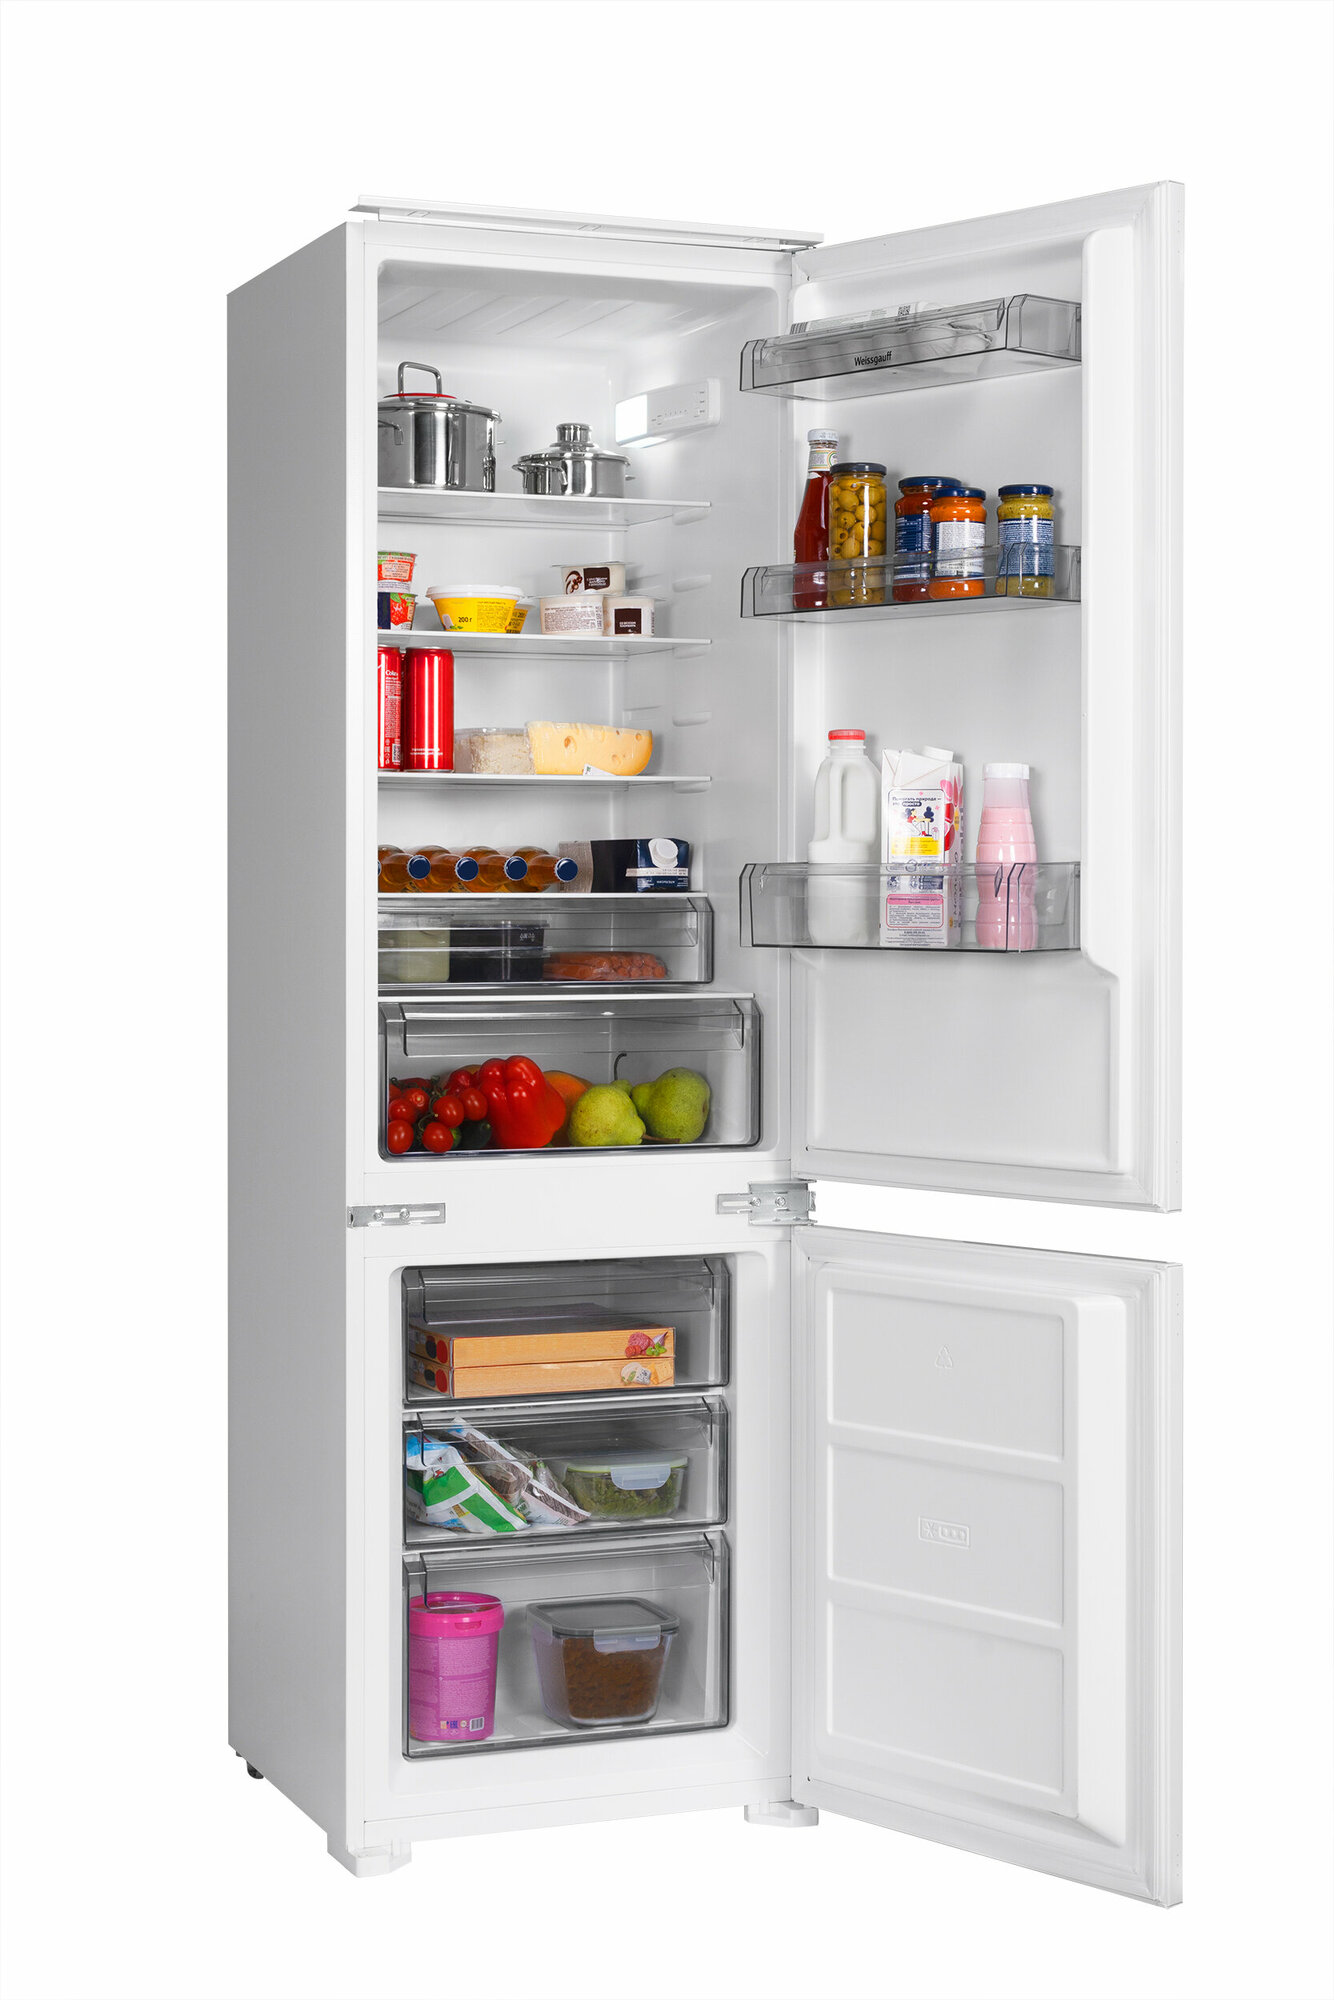 Встраиваемый холодильник Weissgauff WRKI 2801 MD 3 года гарантии, капельная система размораживания, SMART-режим, SUPER-режим, автономное сохранение холода до 13 ч, перенавешиваемые двери, LED-освещение, класс энергопотребления А+